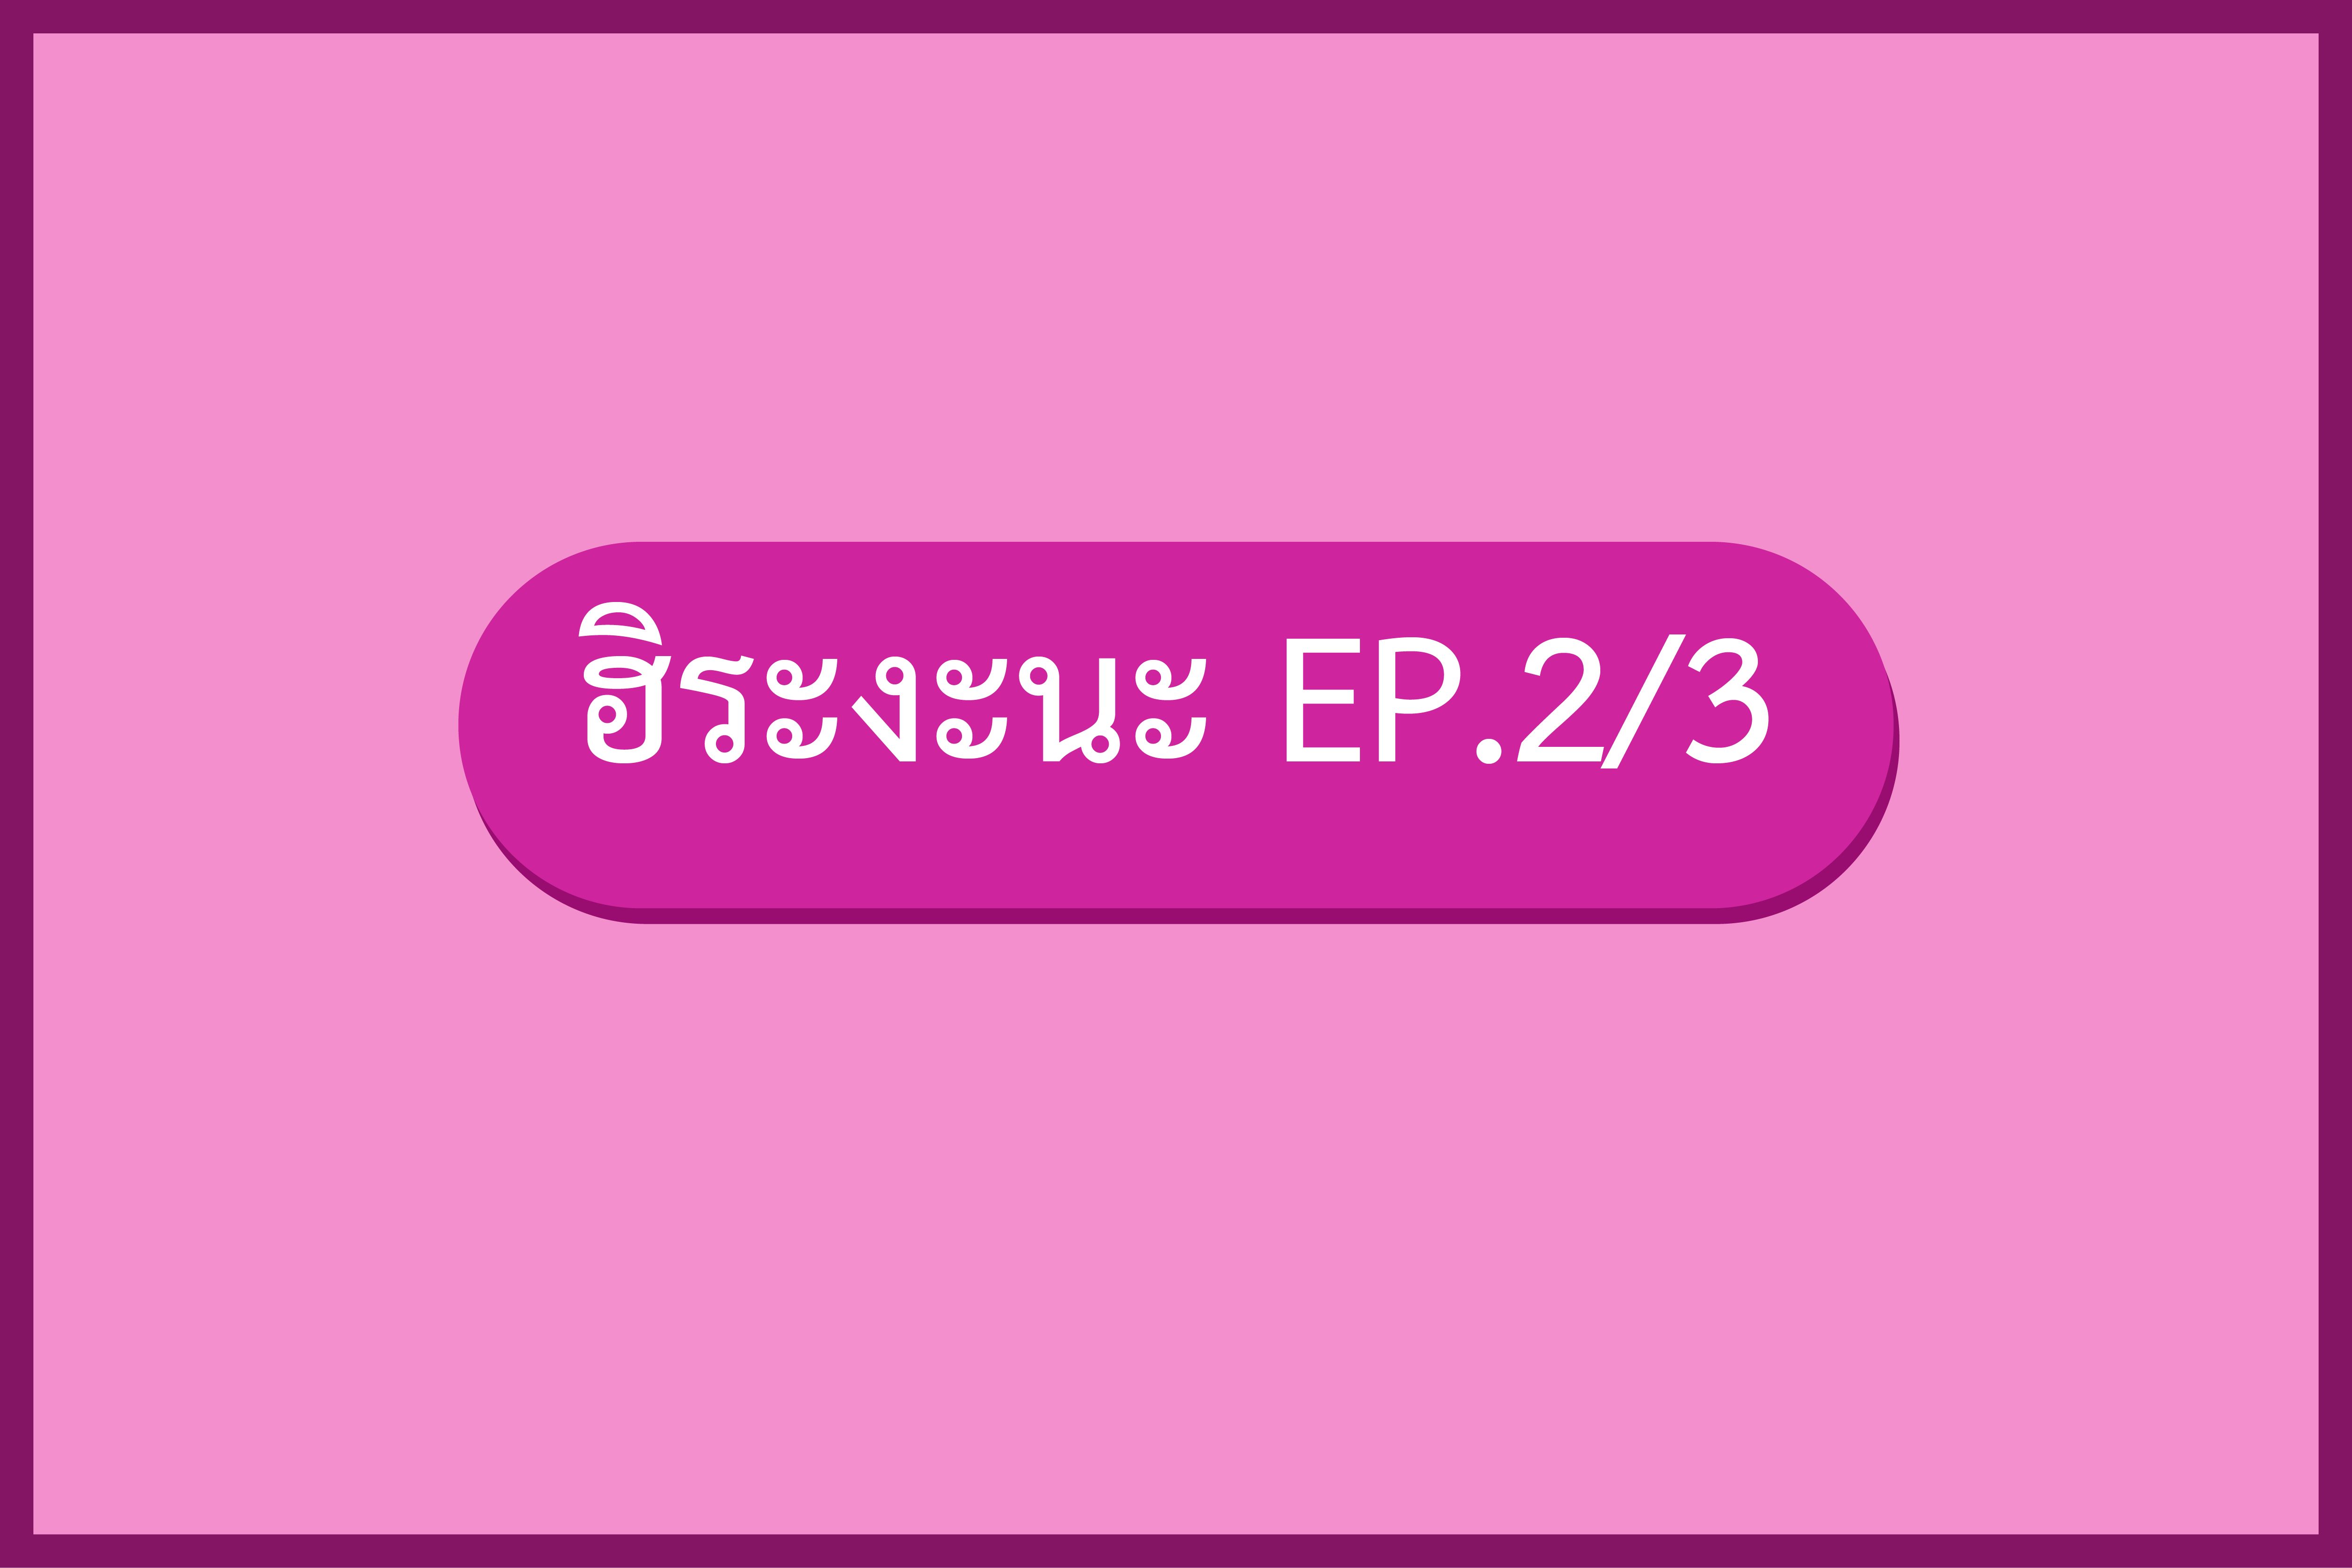 มินนะโนะนิฮงโกะ 1 EP.3 ฮิระงะนะเสียงขุ่น (2/3)